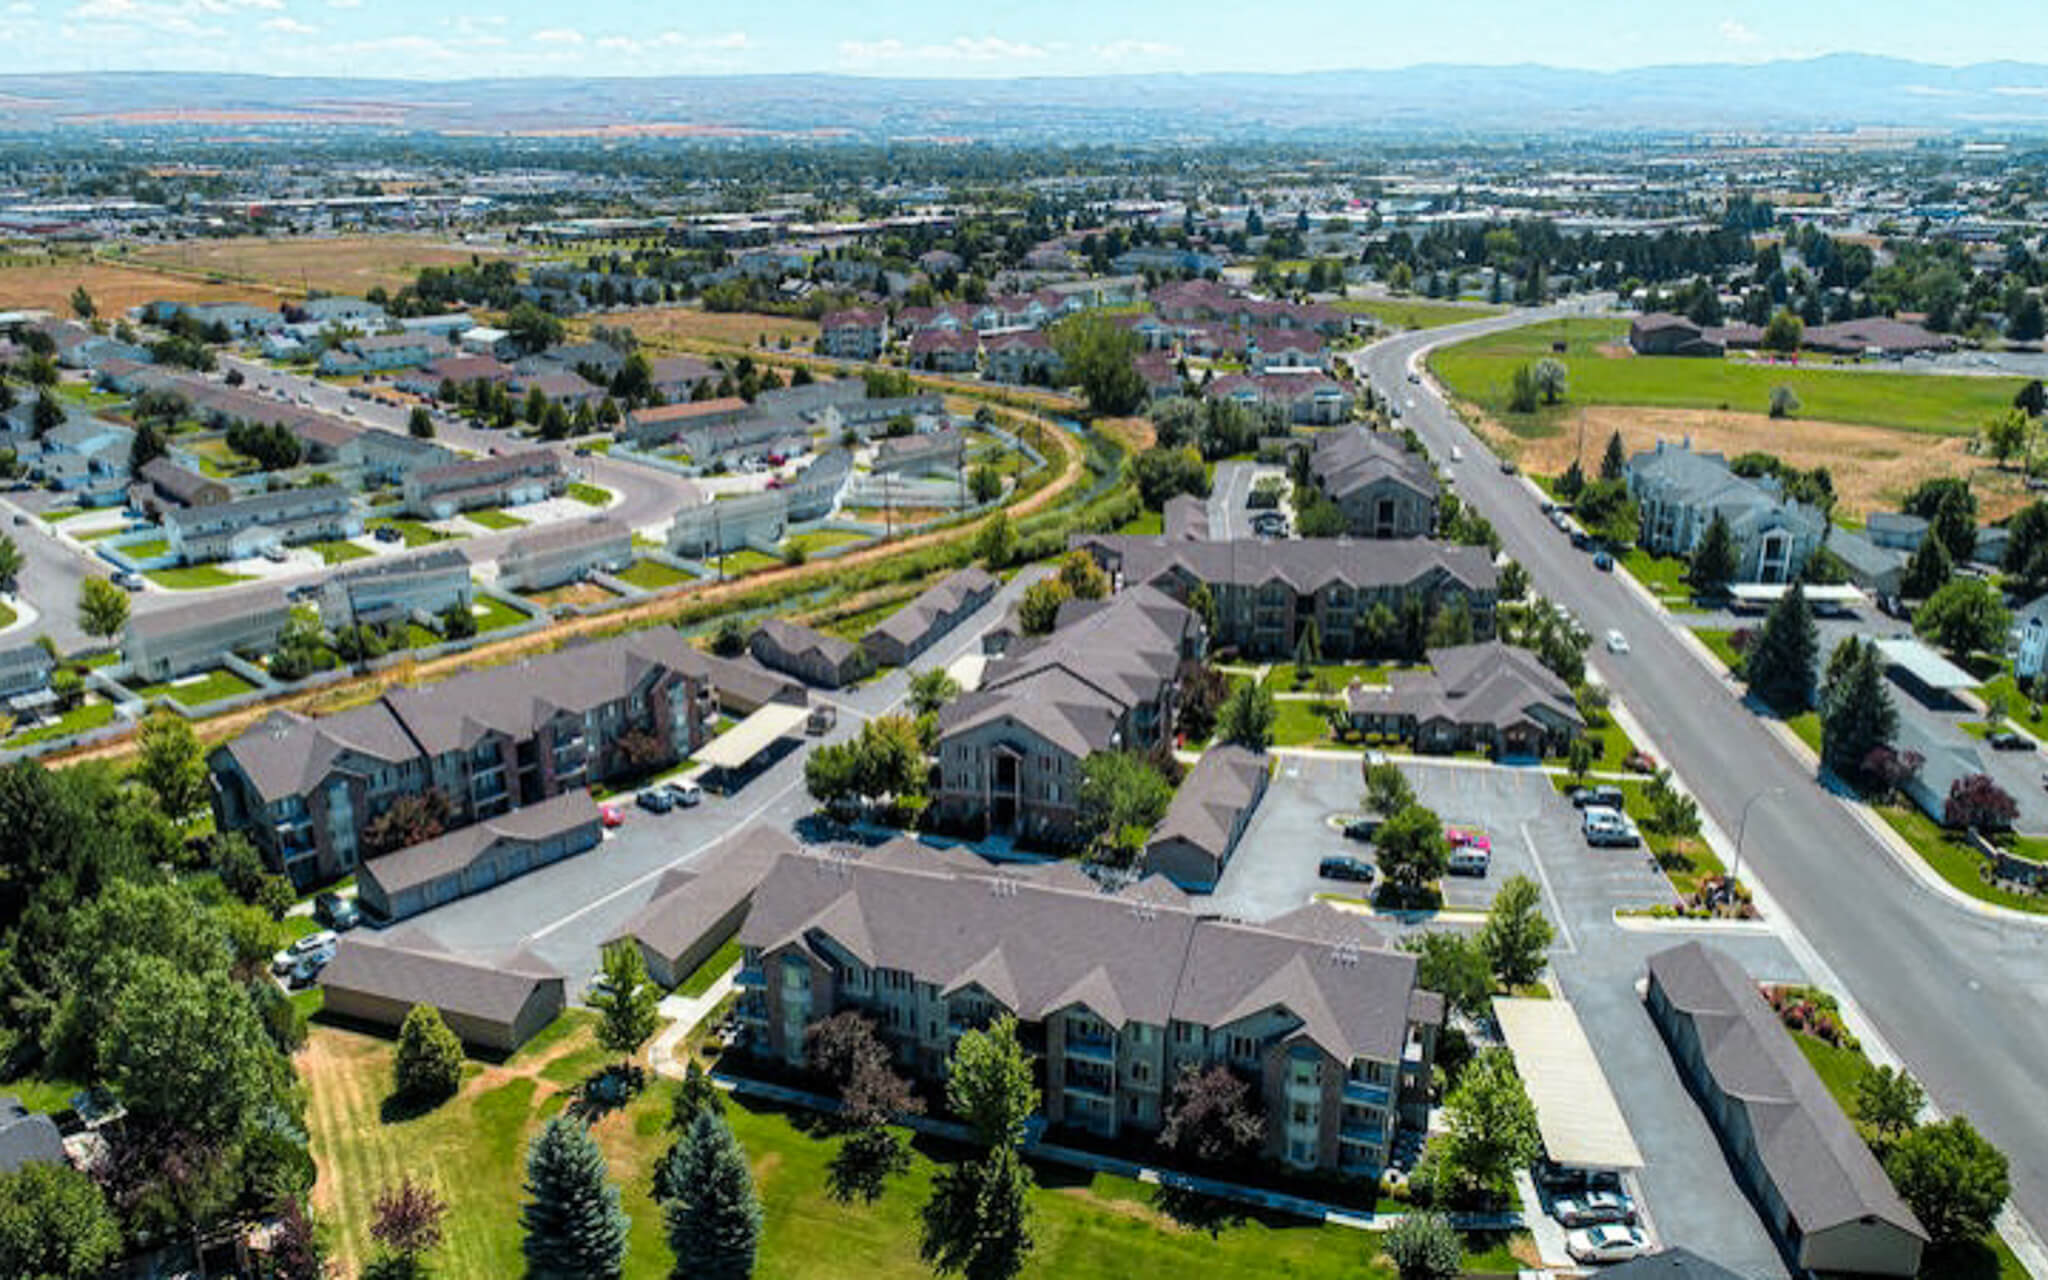 Paragon Corporate Housing - Meadows at Parkwood Apartments - Idaho Falls Idaho